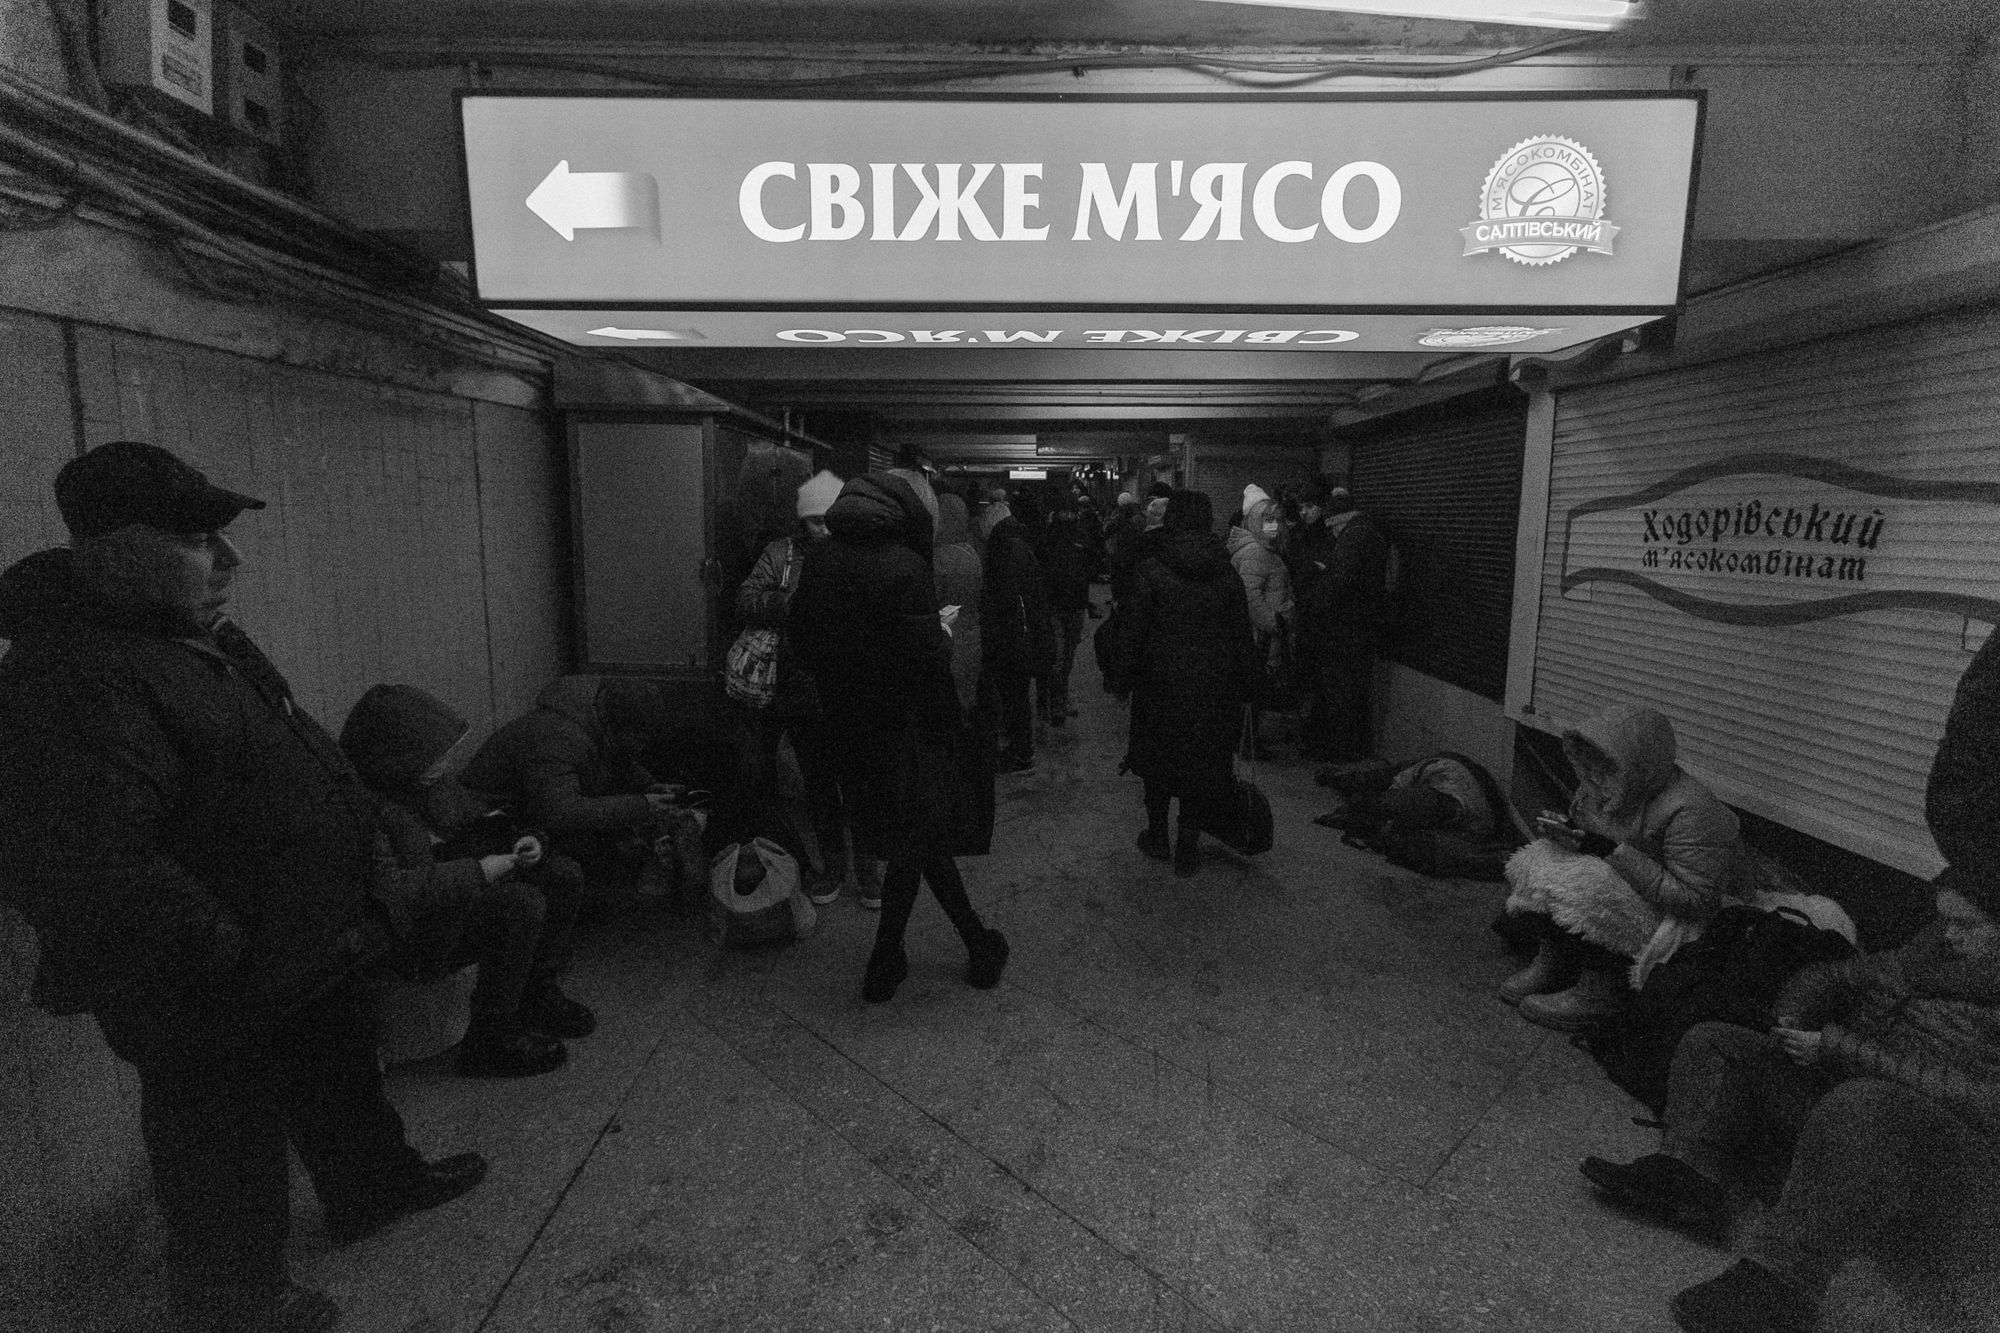 © Pavel Dorogoy | Kharkiv, Ukraine, 24.02.2022